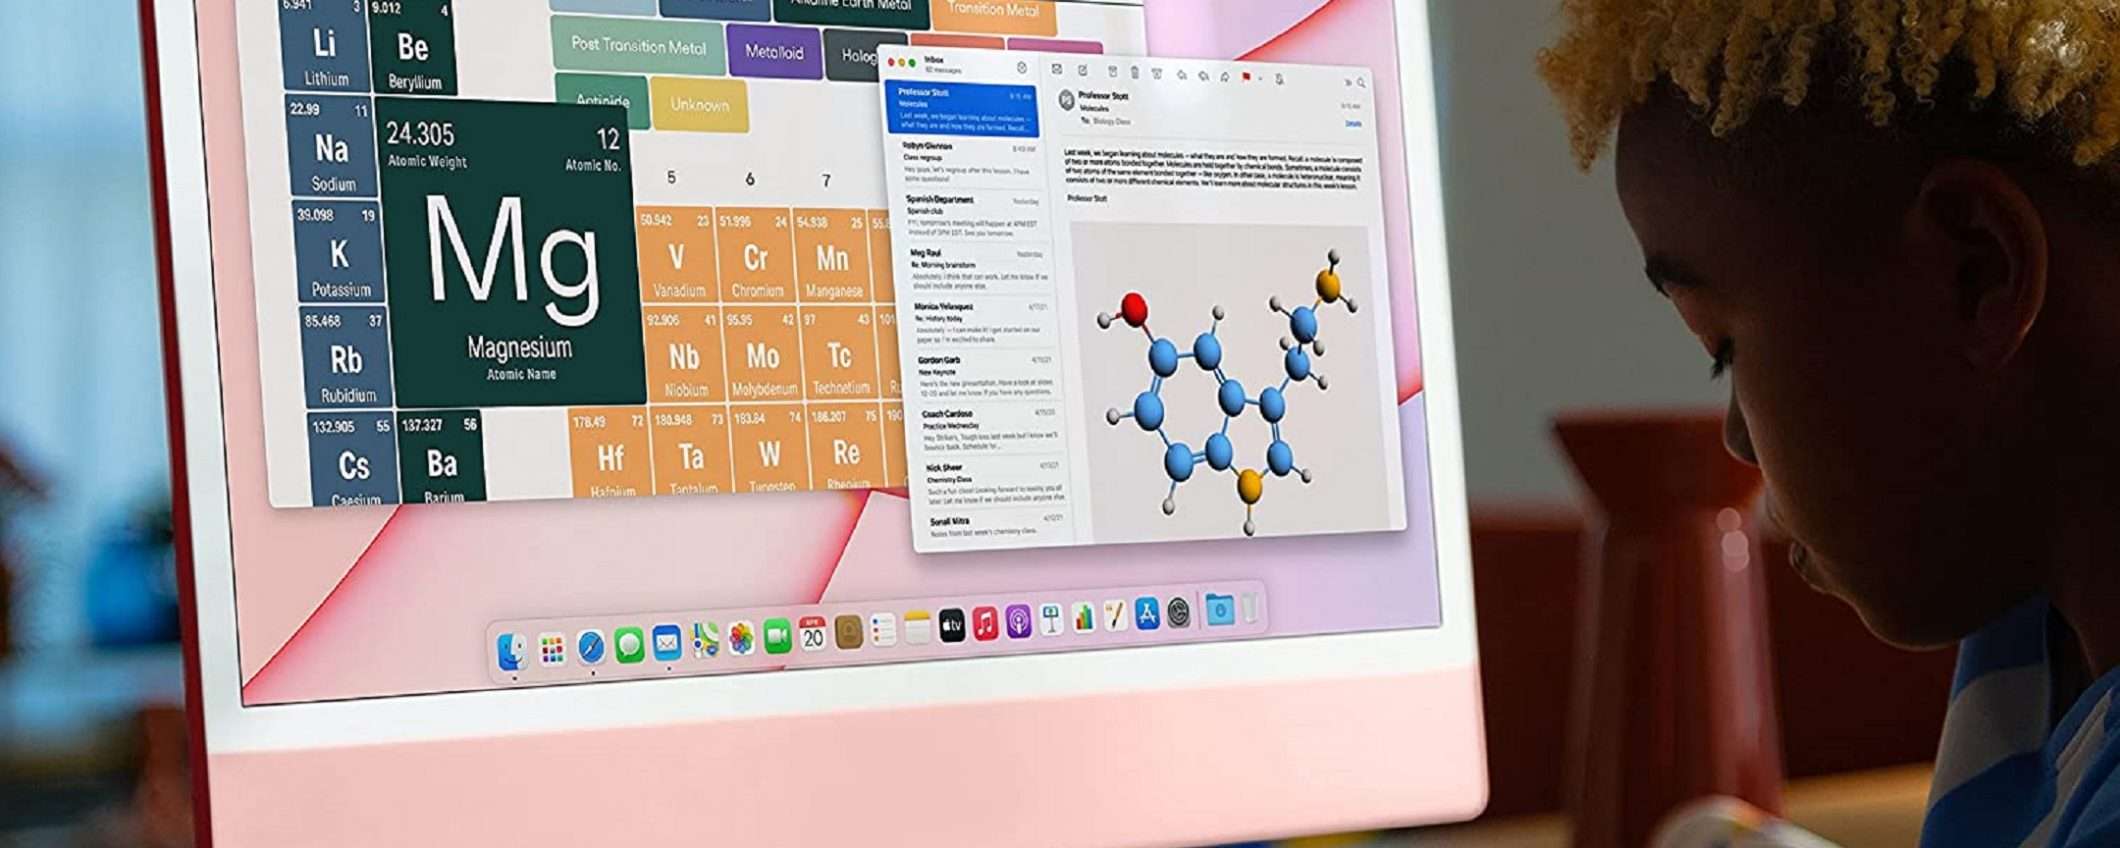 Apple iMac 2021 rosa da 512GB a un prezzo FOLLE!